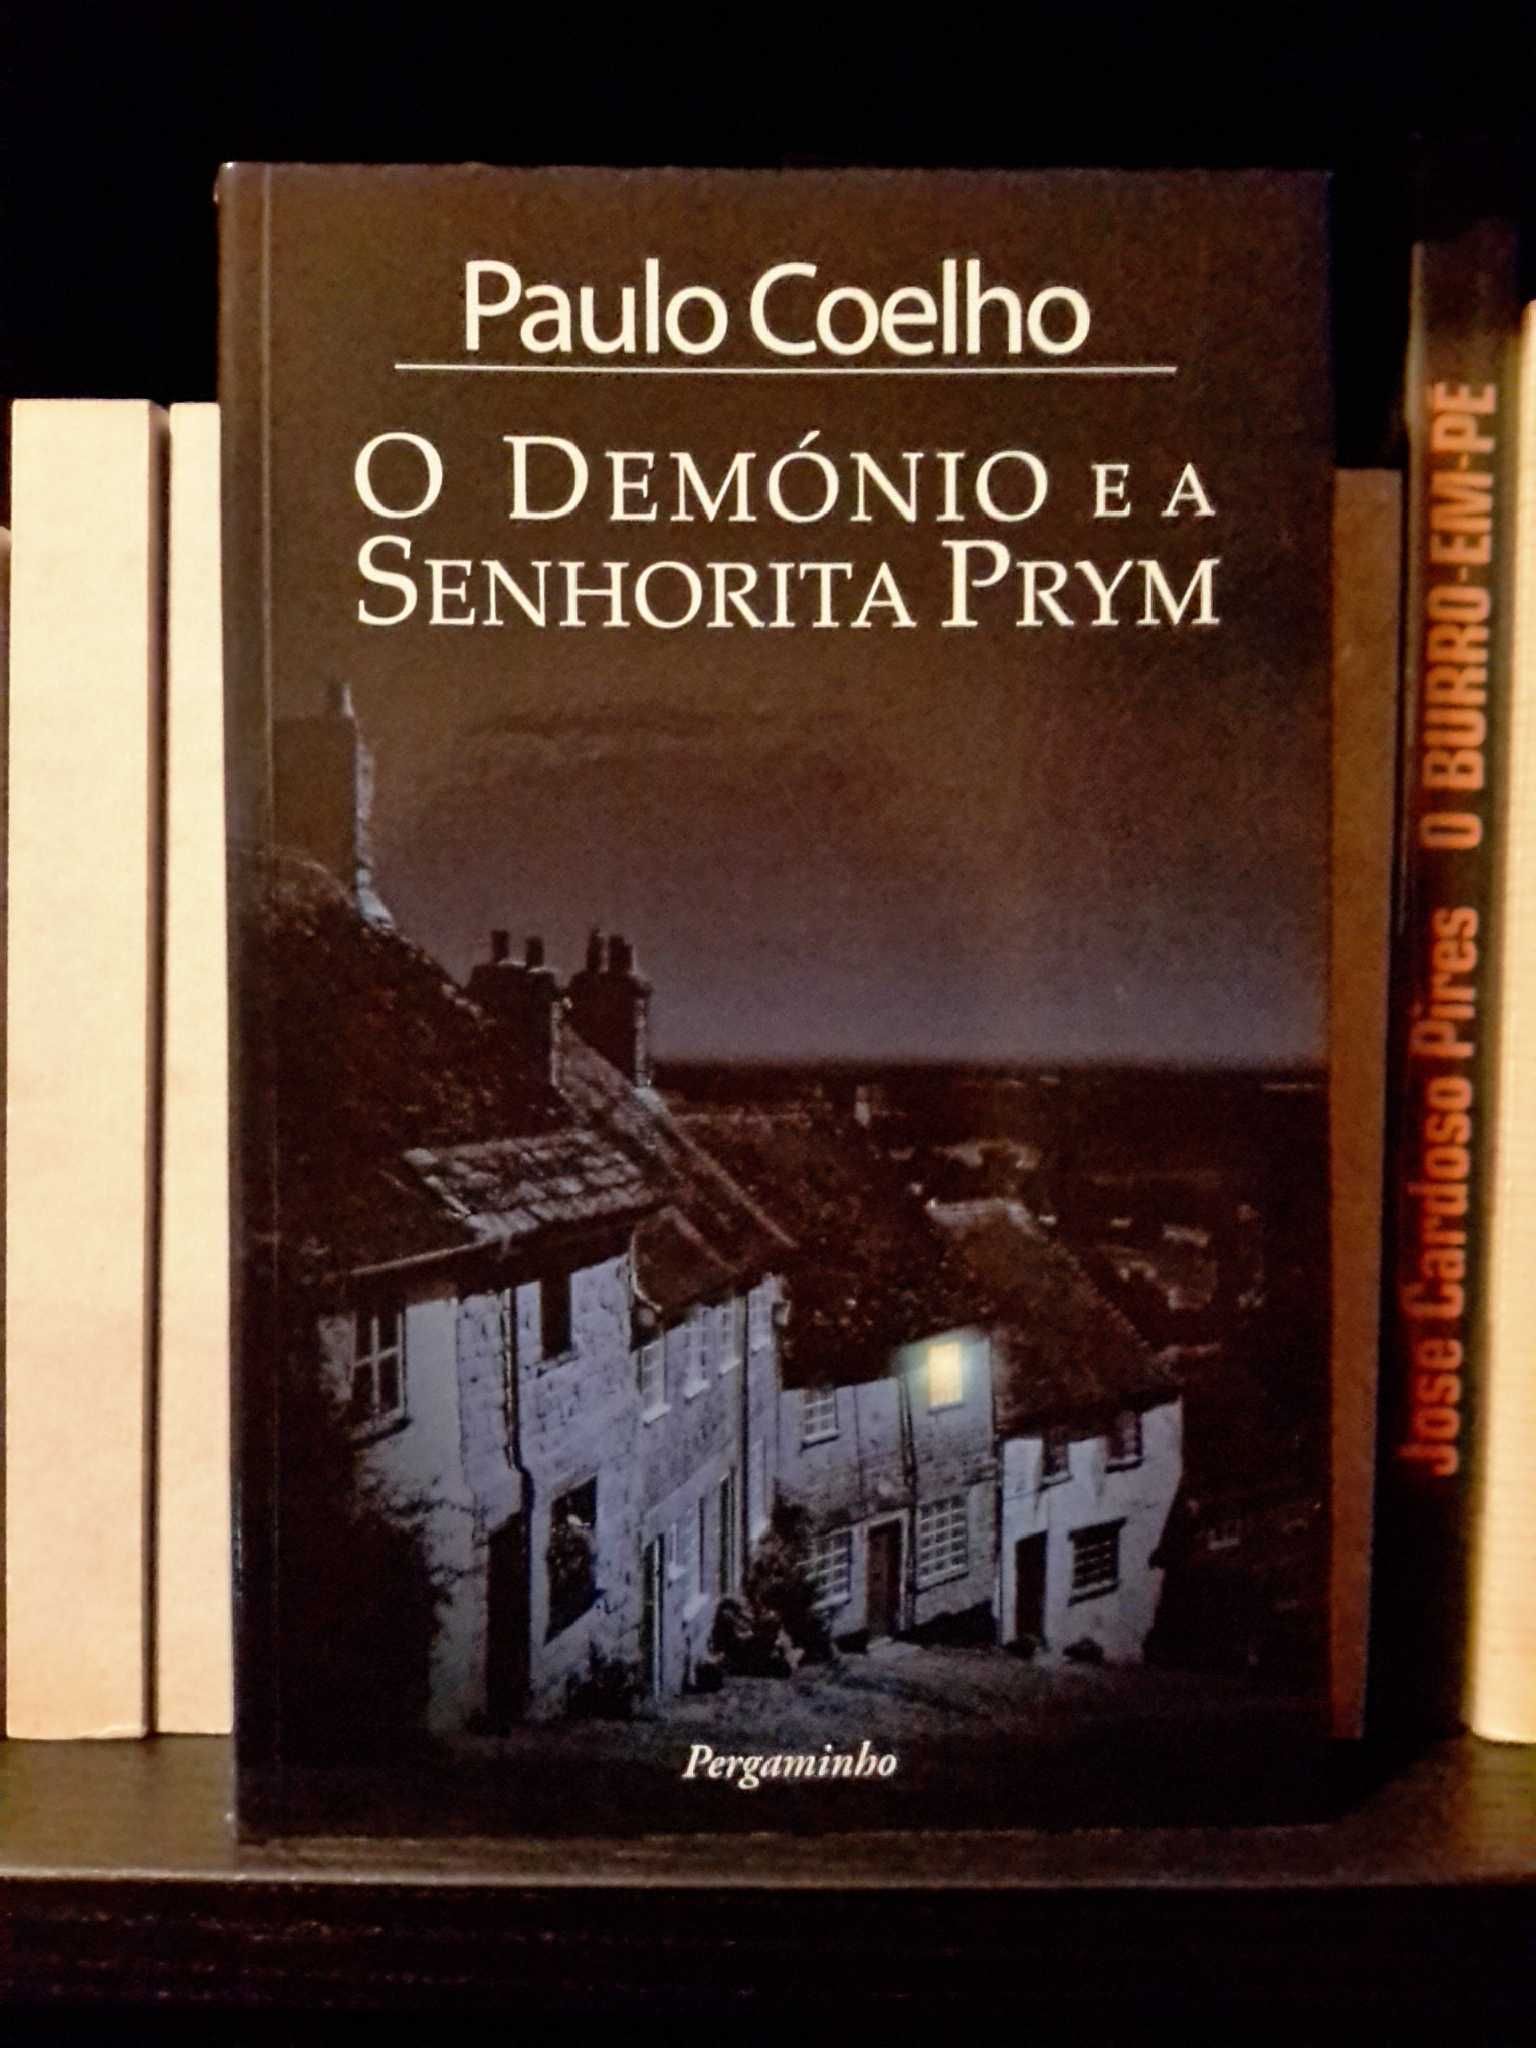 Paulo Coelho - O Demónio e a Senhorita Prym